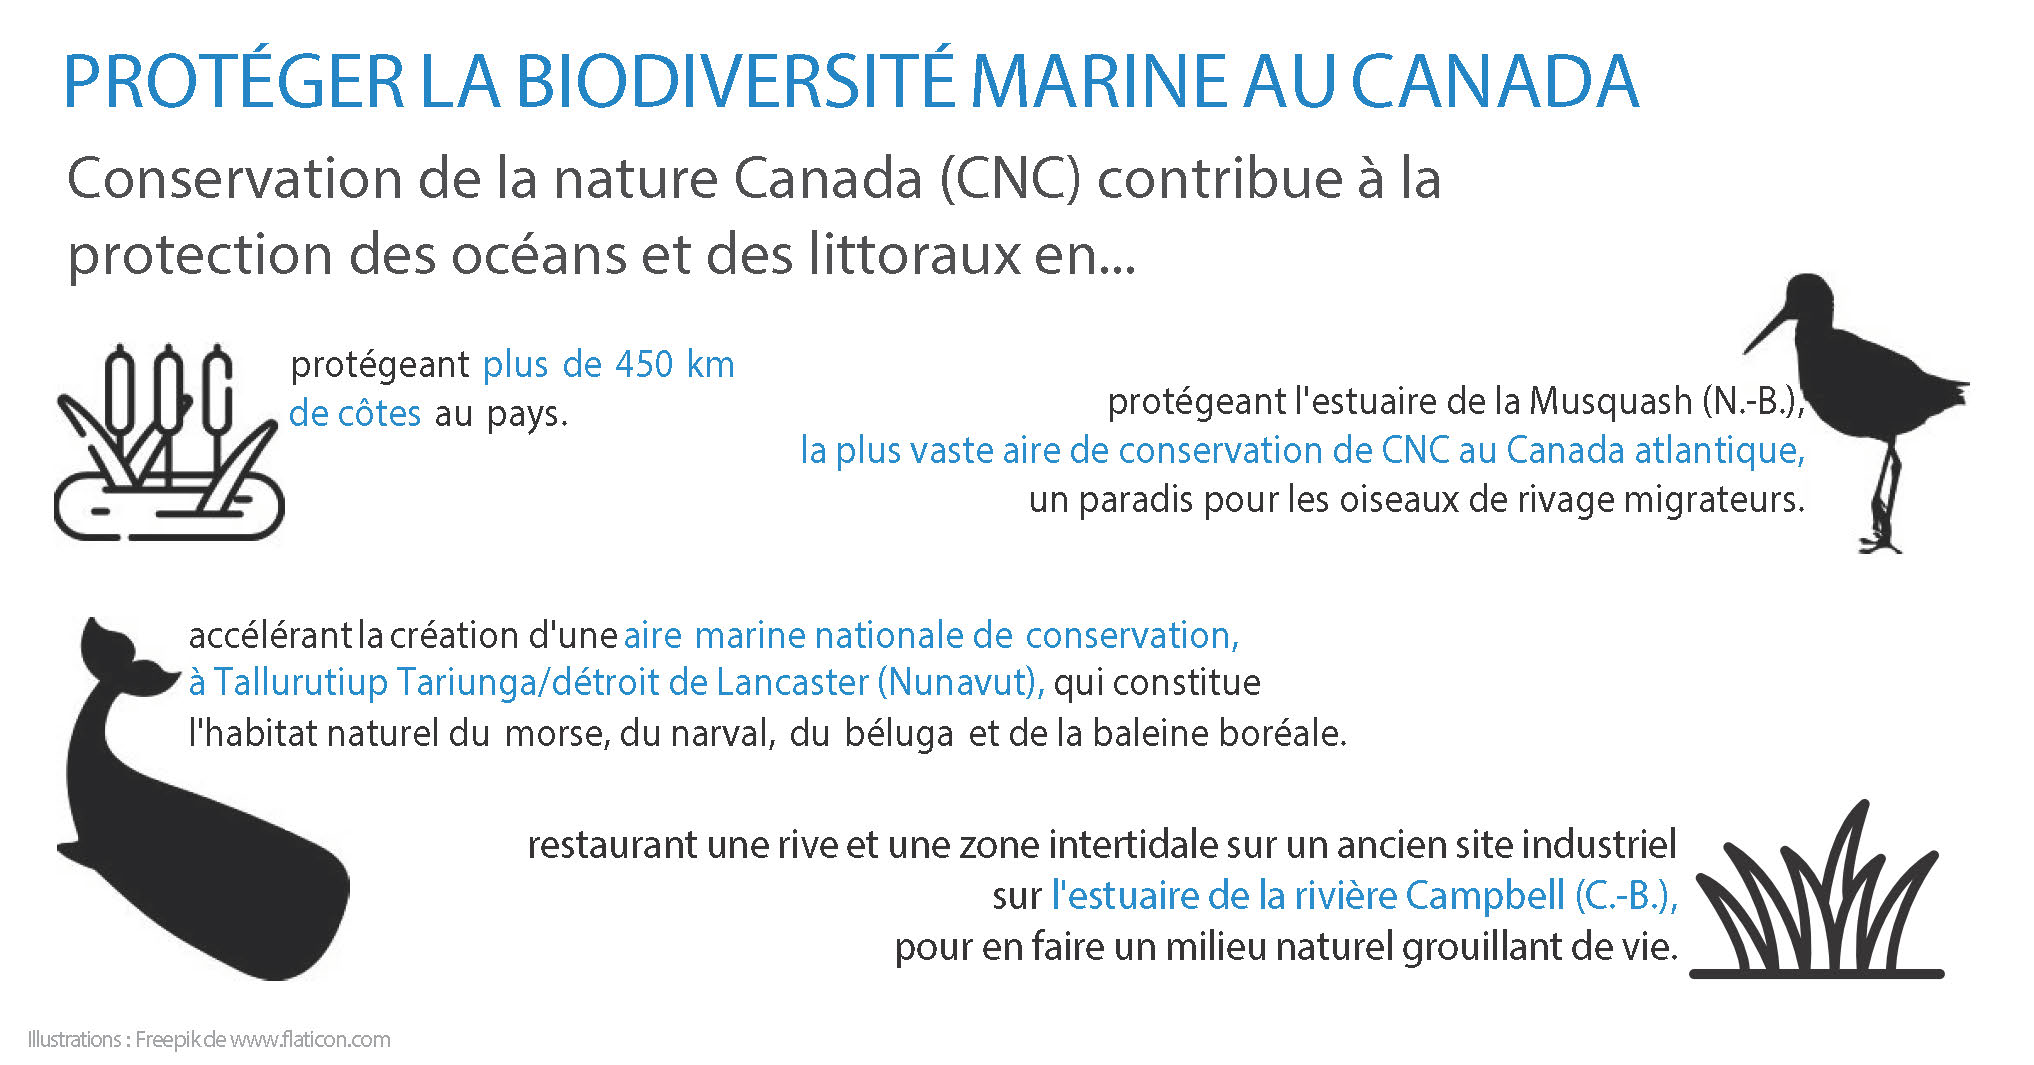 Protéger la biodiversité marine au Canada (Infographie de CNC)